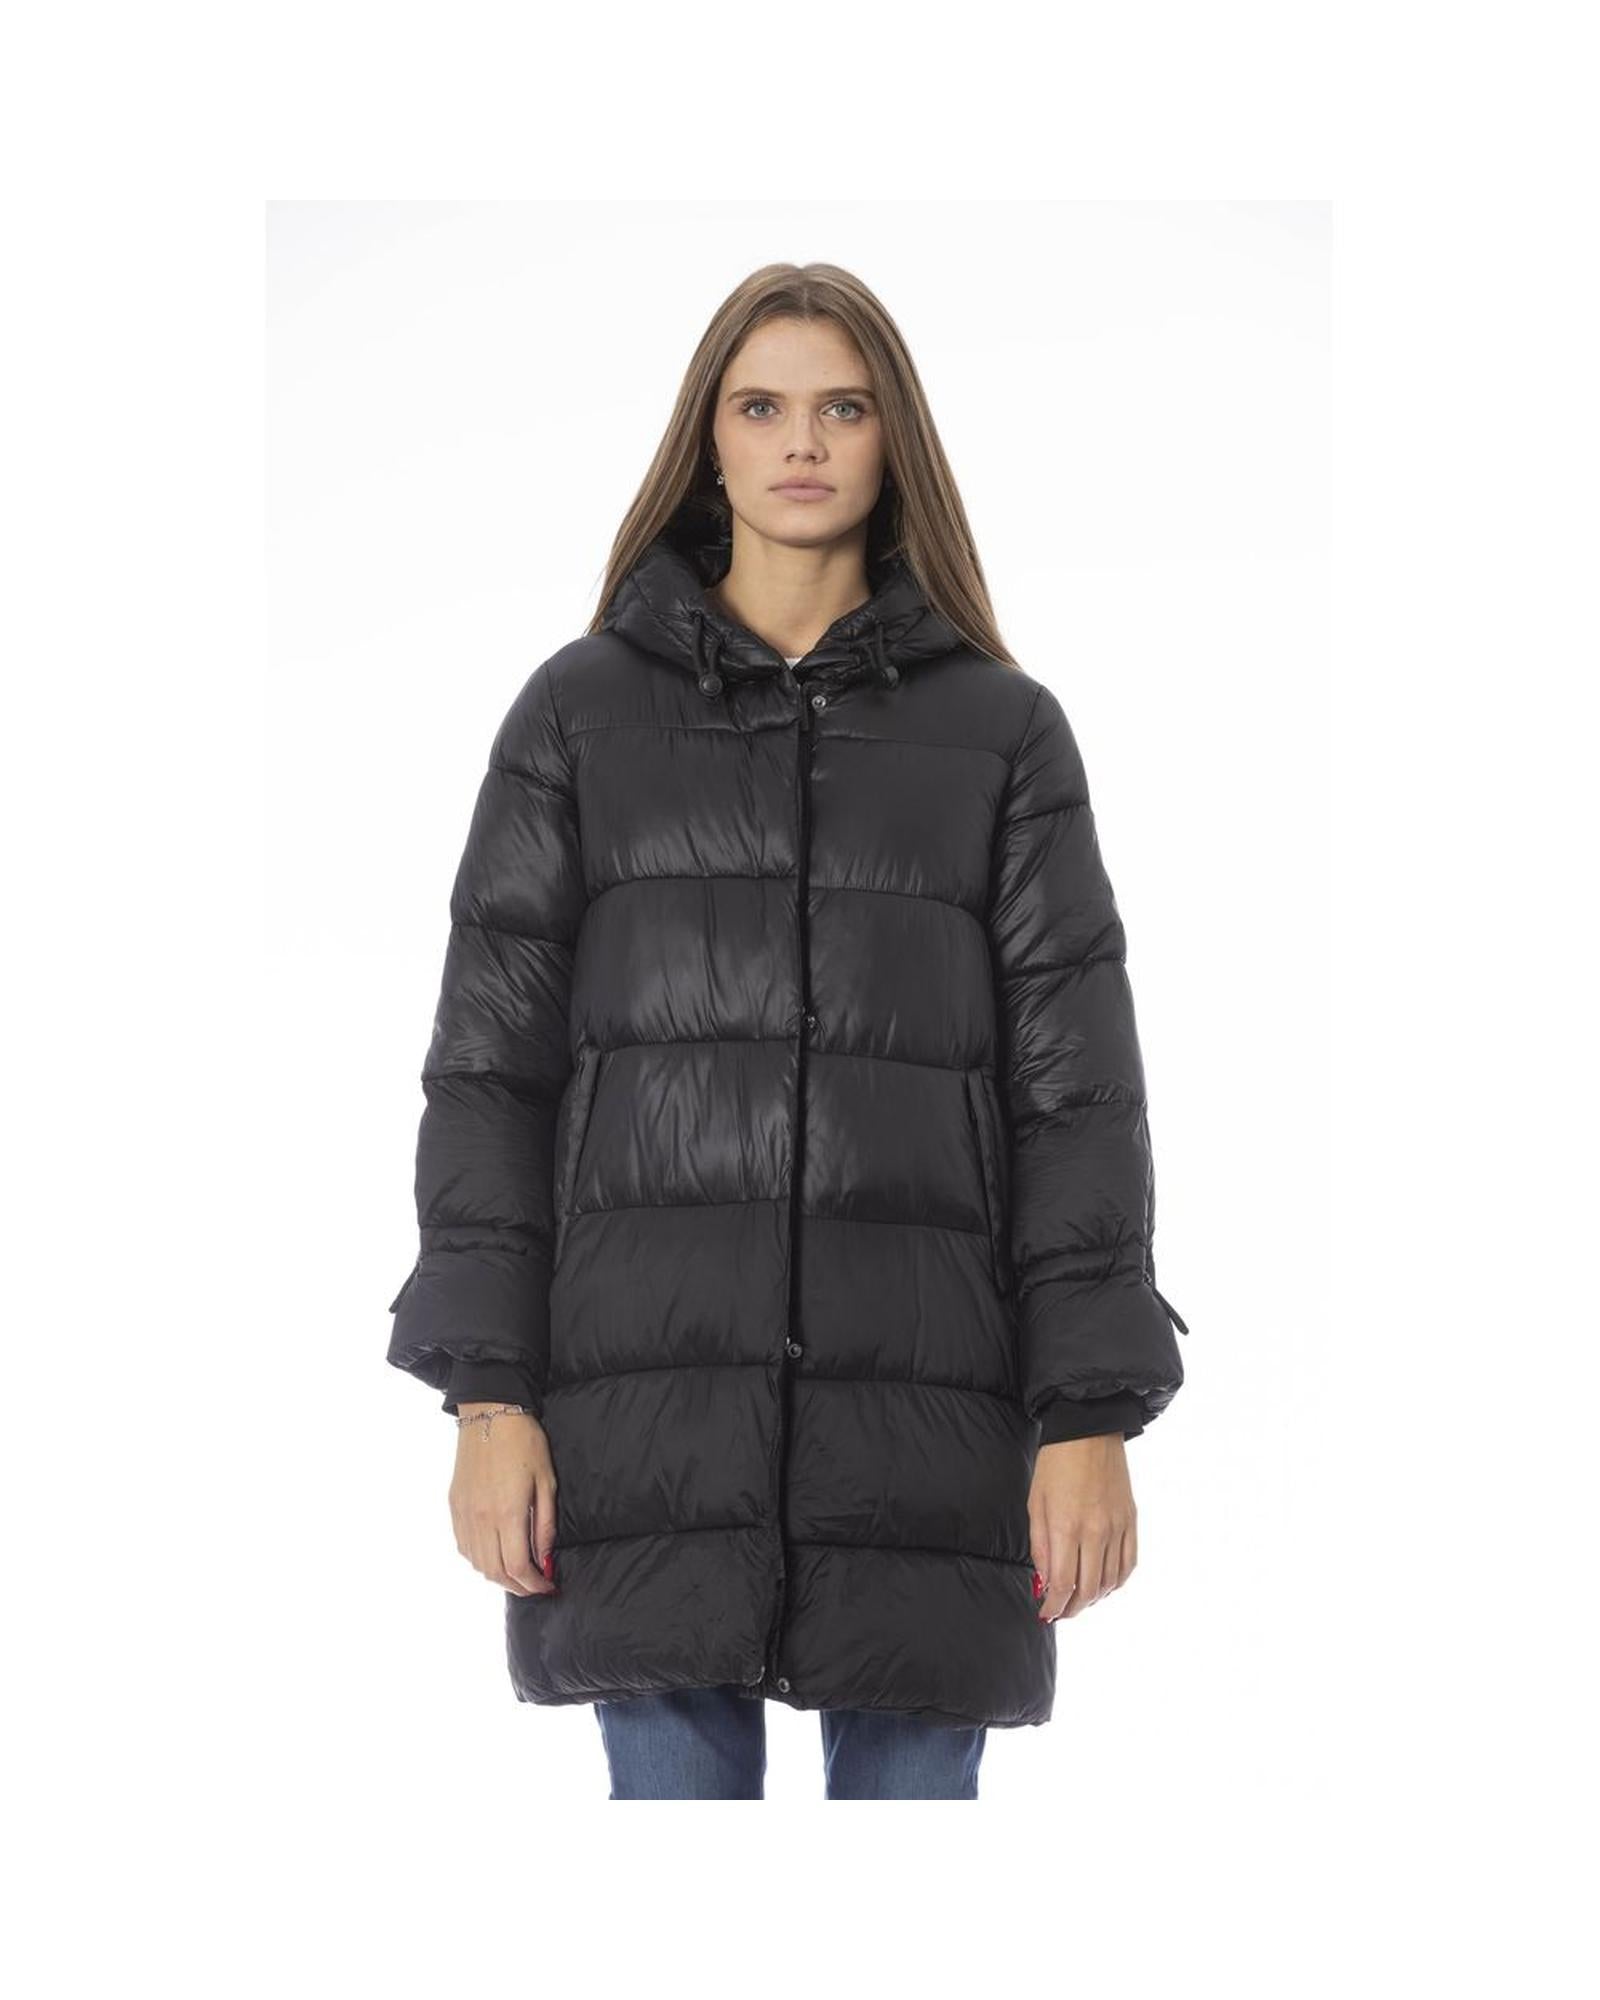 Women's Black Nylon Jackets & Coat - 2XL